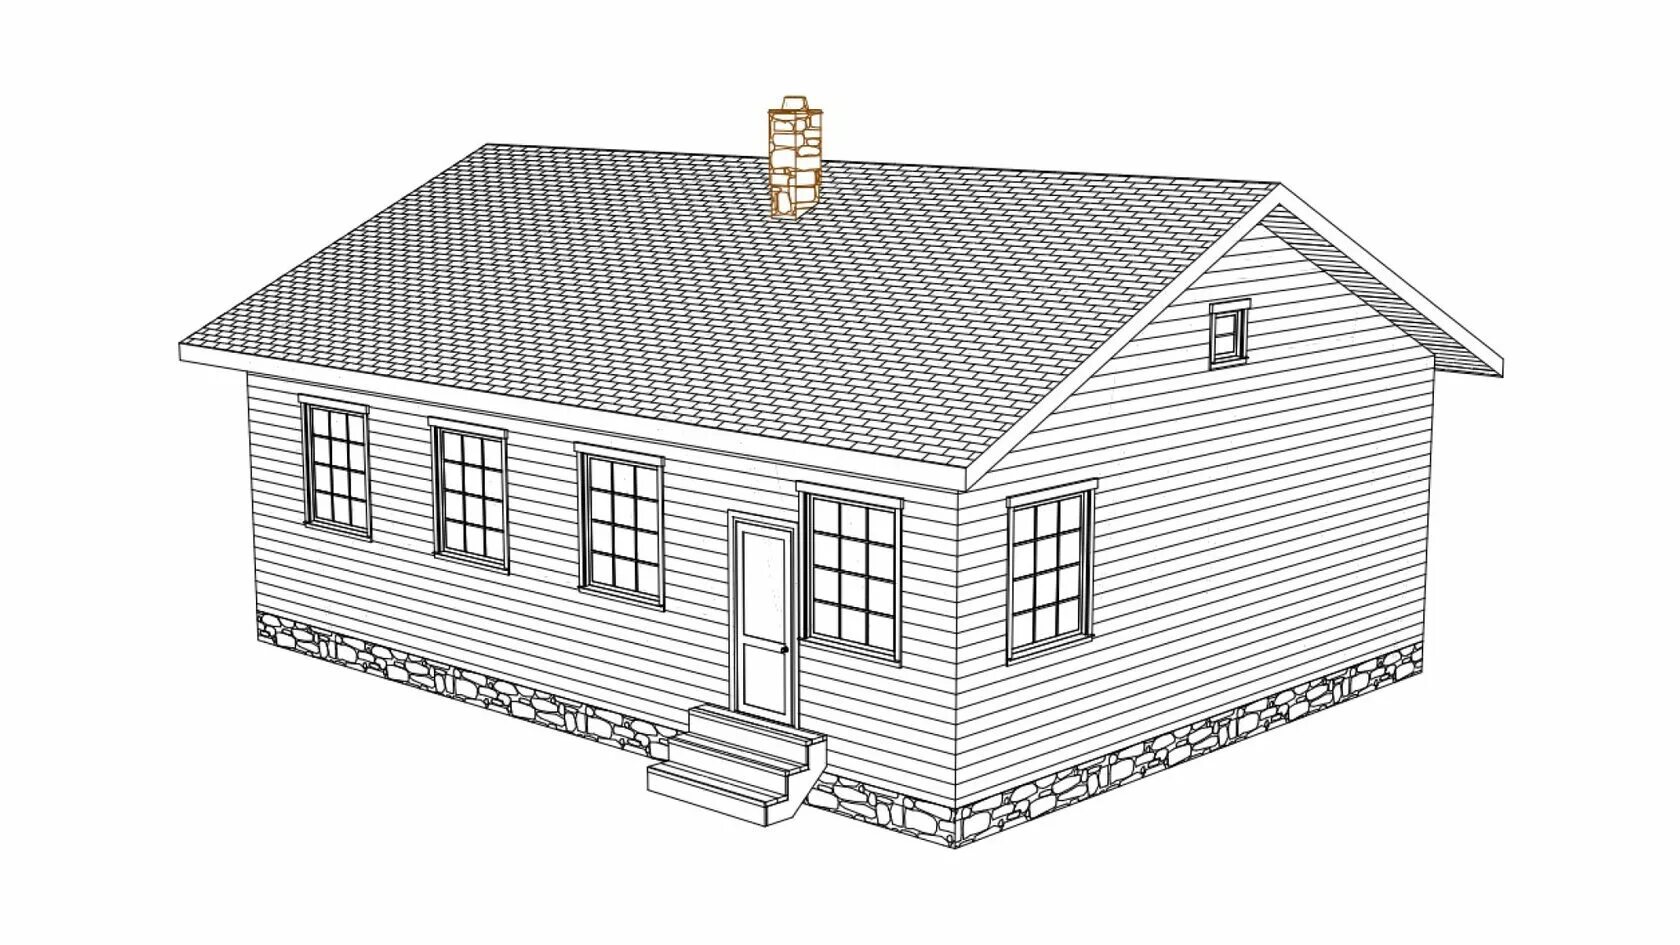 Проект 17 14. 17сч12.00-ОС-9.0Х12.0-108. Каркасный одноэтажный дом проект 3д. Фасад дома 3д модель. Домокомплект из полистиролбетона.